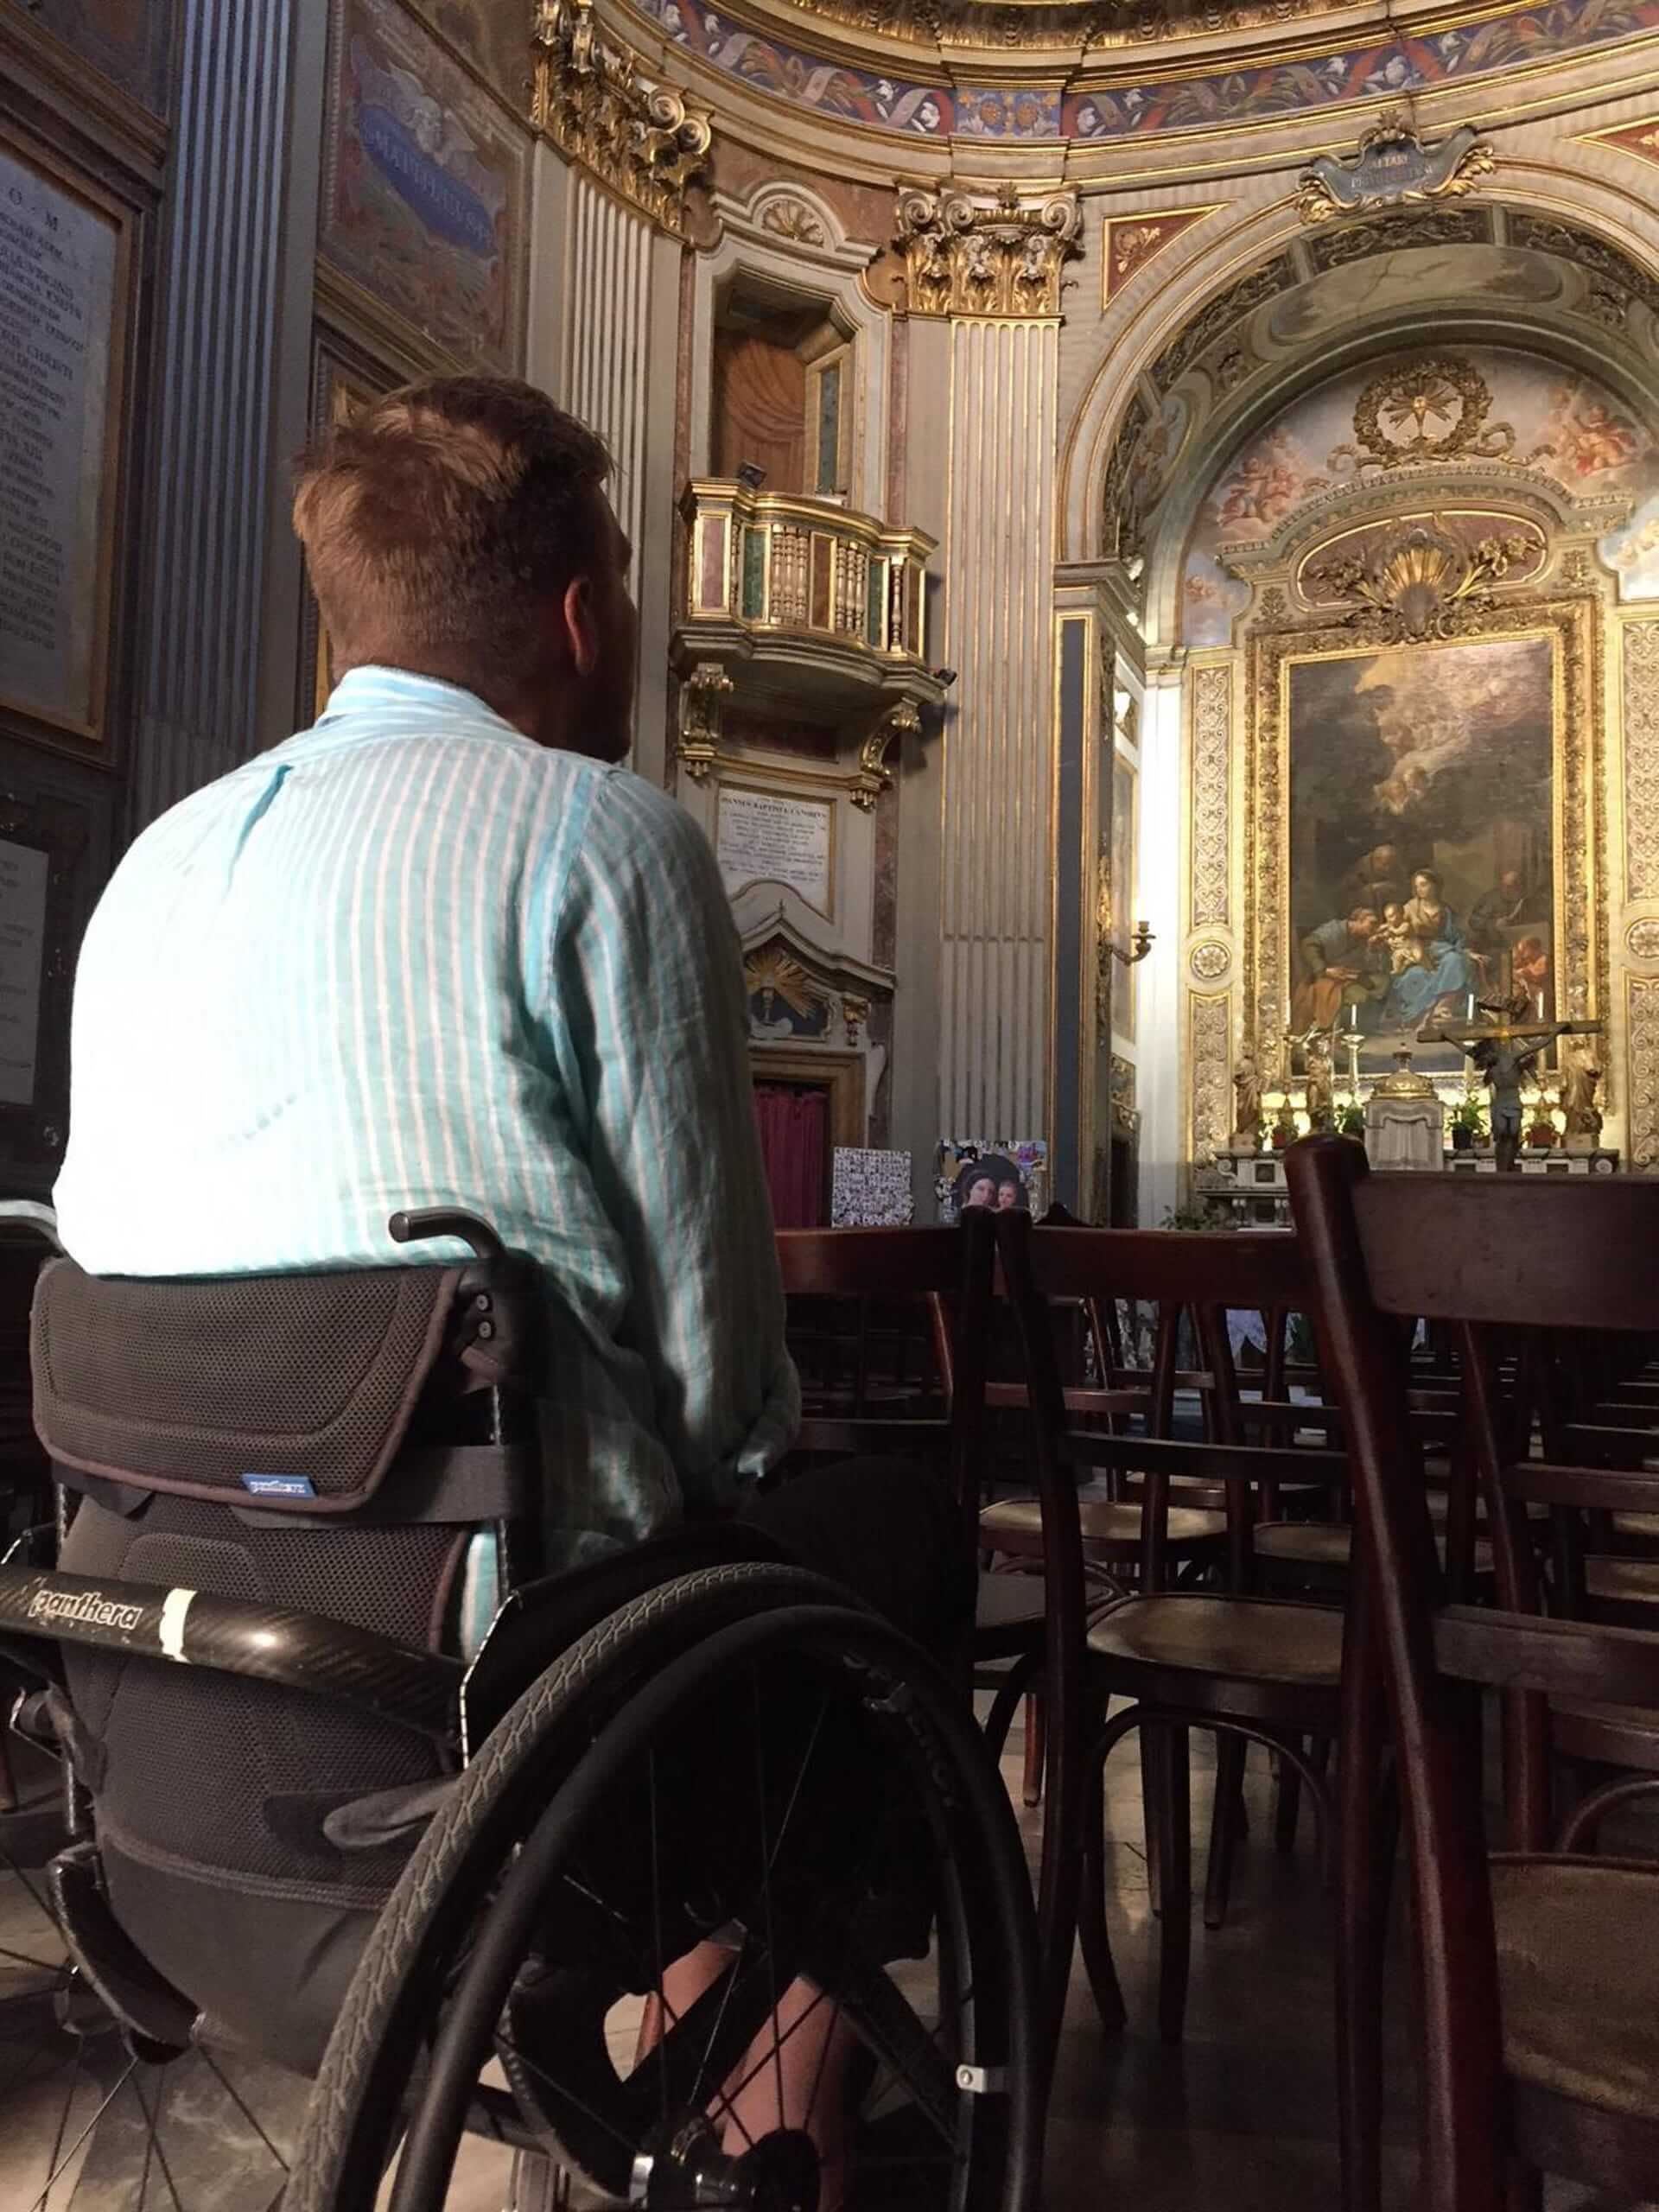 Bilde av artikkelskribent i rullestol inne i en kirke. Han sitter med ryggen mot kameraet og kikker mot et alter. Han er alene.